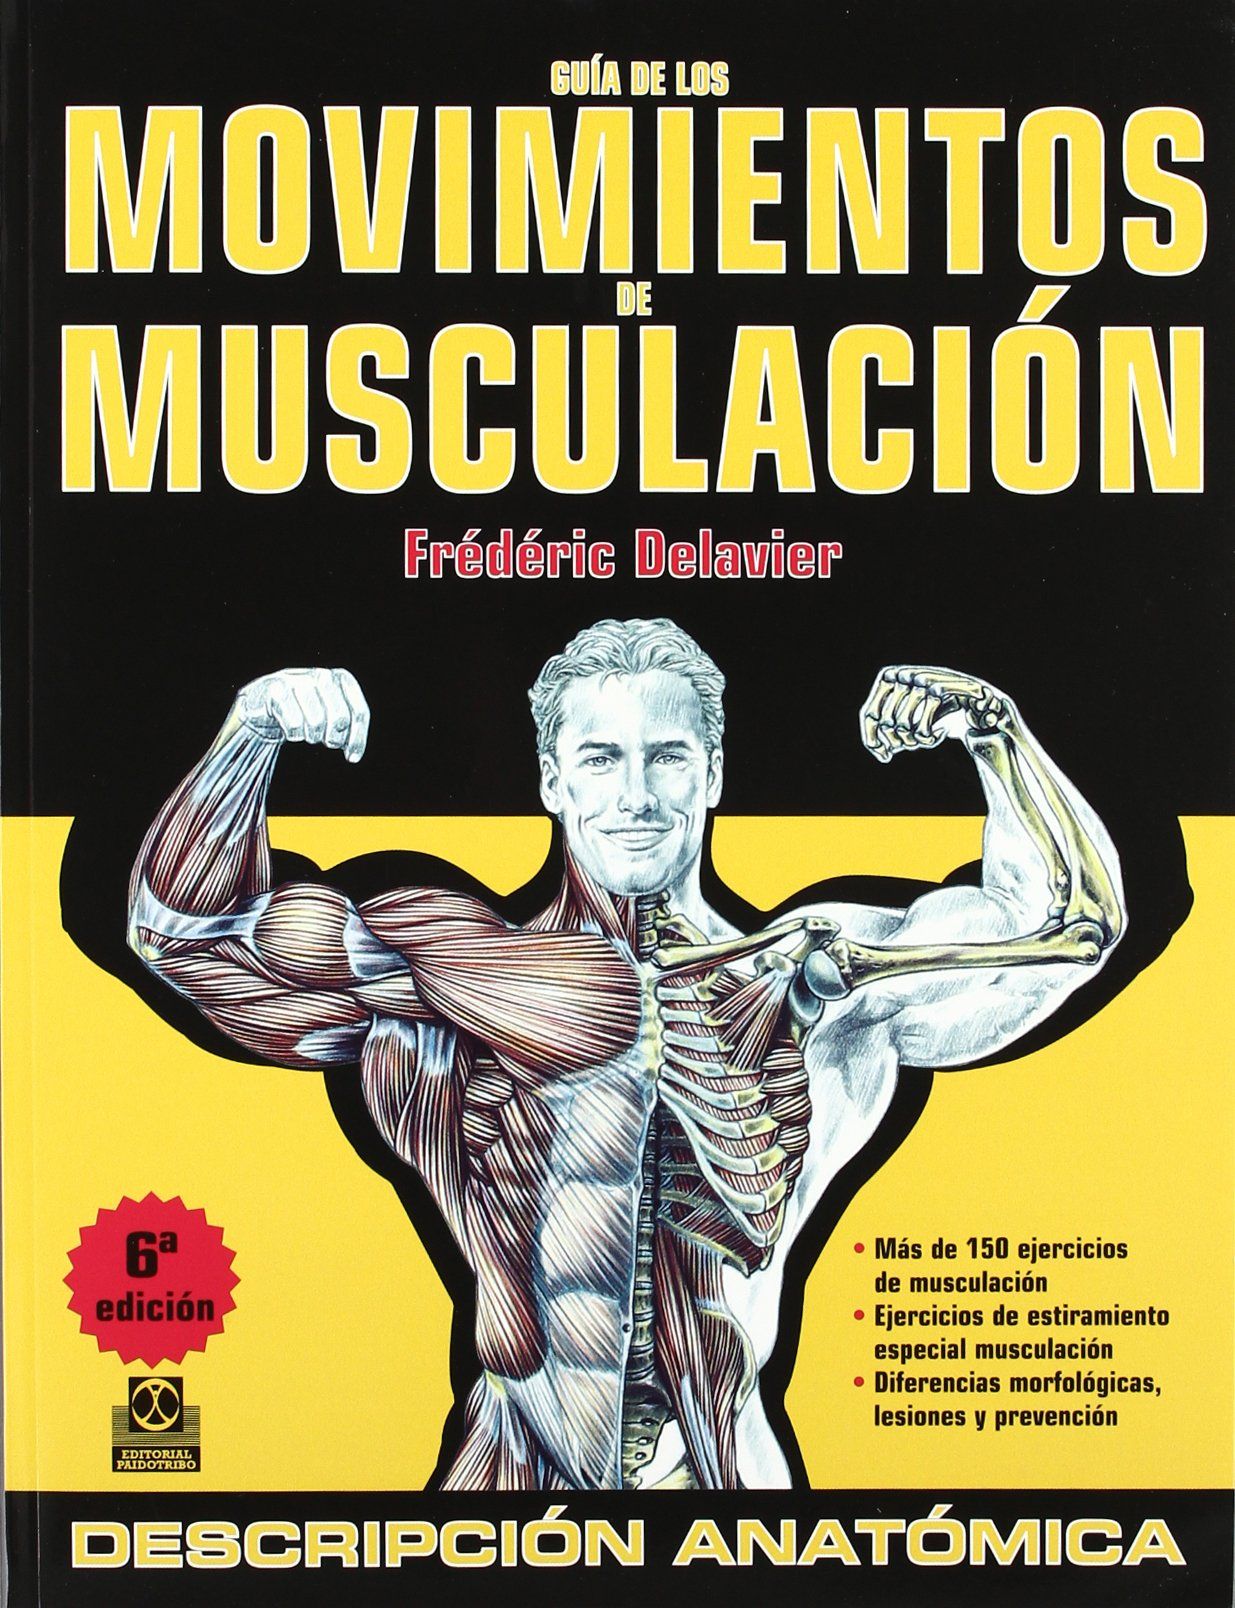 Diario De Entrenamiento gym: Libro de rutinas culturismo y fitness